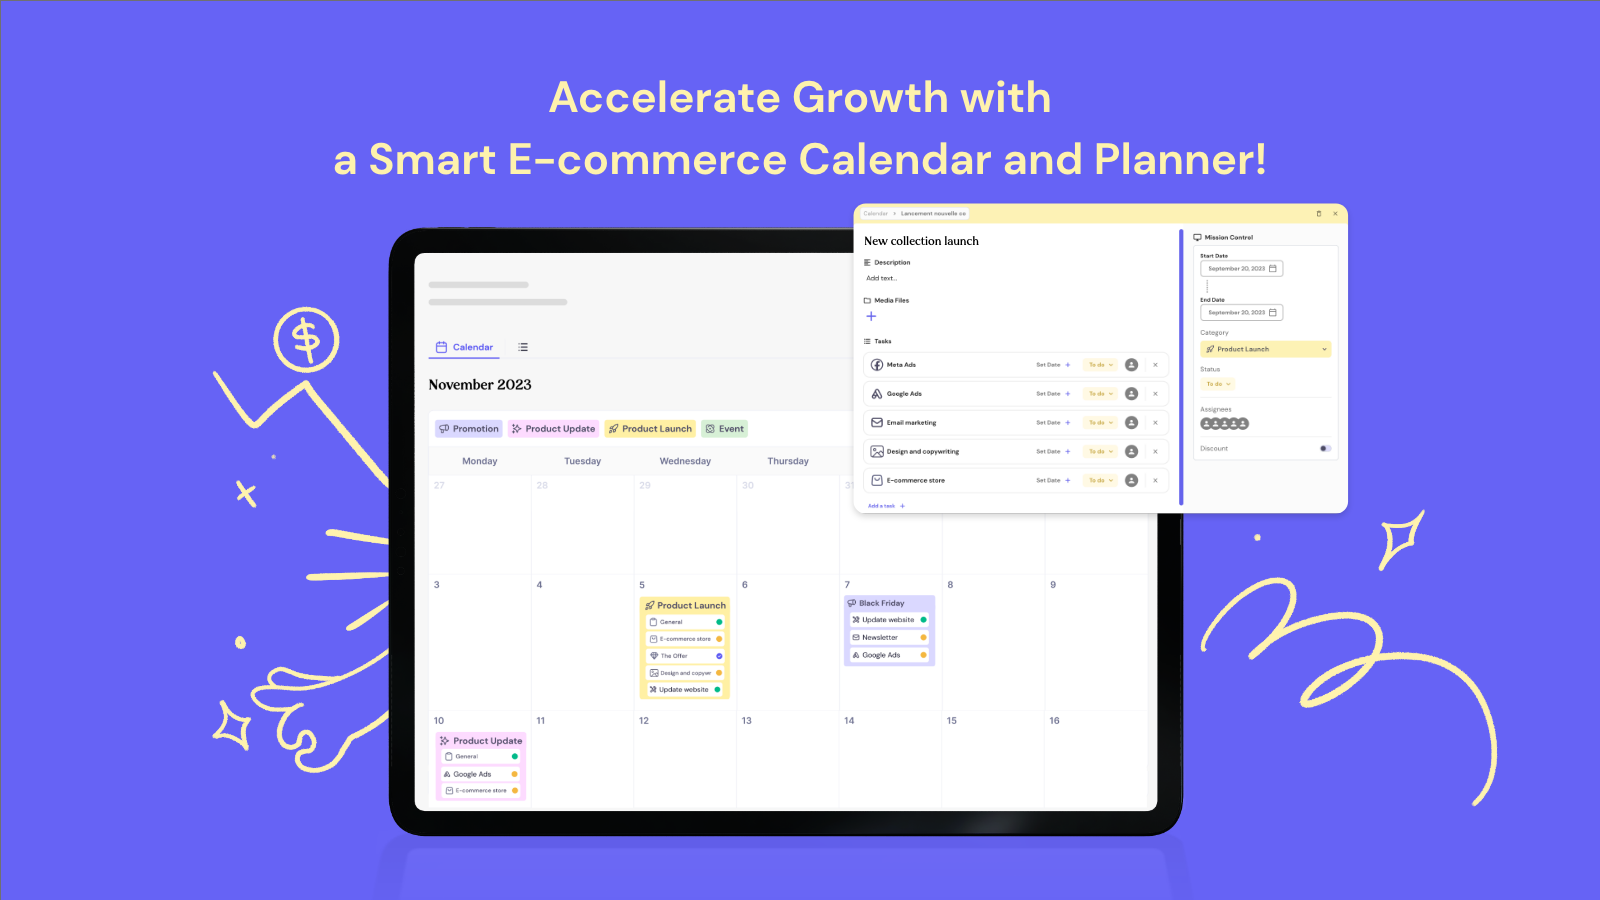 Accélérez la croissance avec un calendrier et un planificateur e-commerce intelligent!